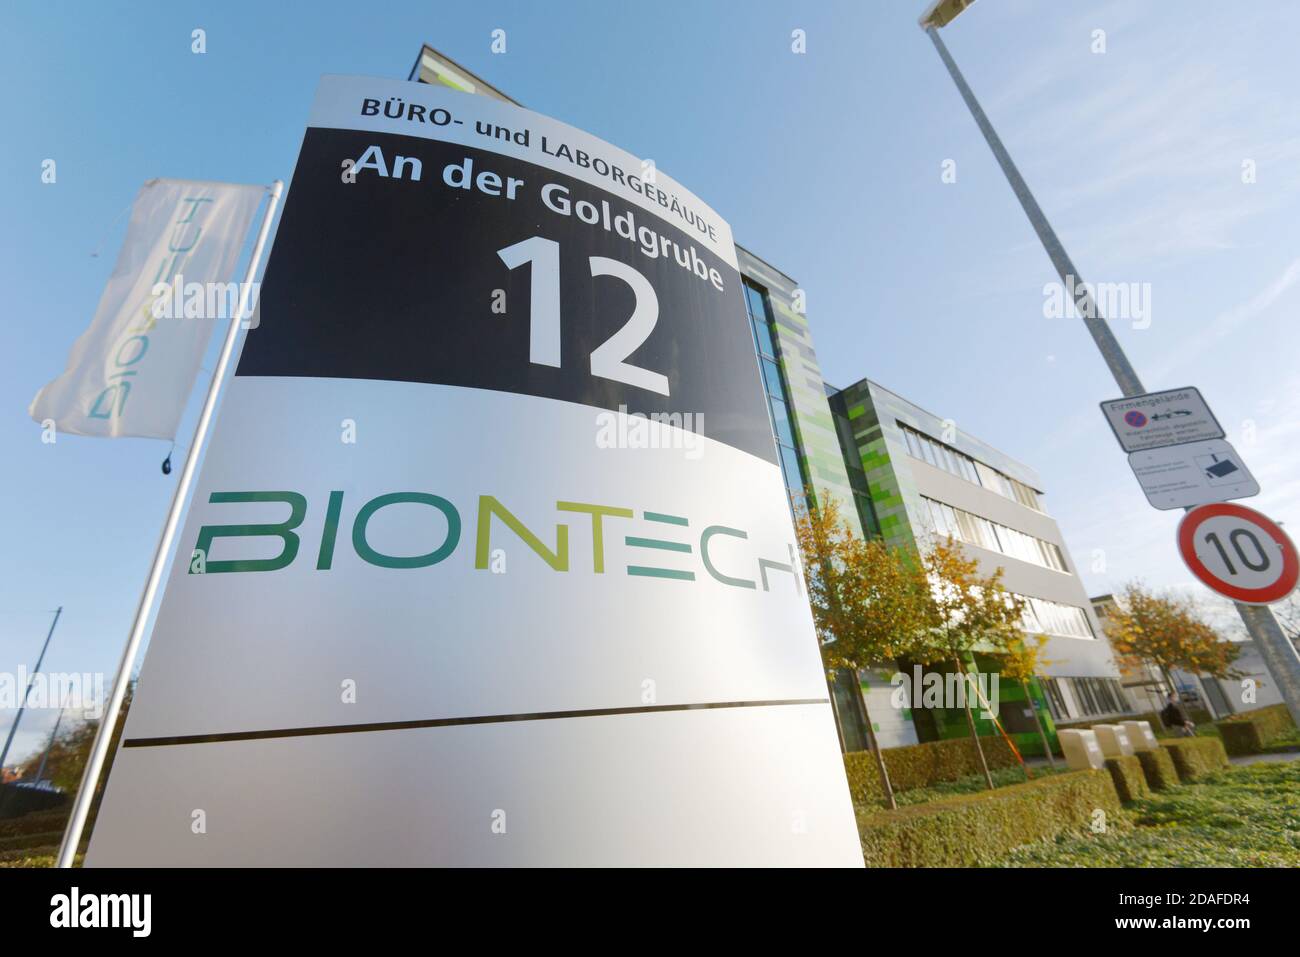 Mayence, Allemagne - 12 novembre 2020 : la société allemande de biotechnologie Biontech mène des recherches dans le domaine de la mise au point d'un vaccin contre Covid-19. Banque D'Images